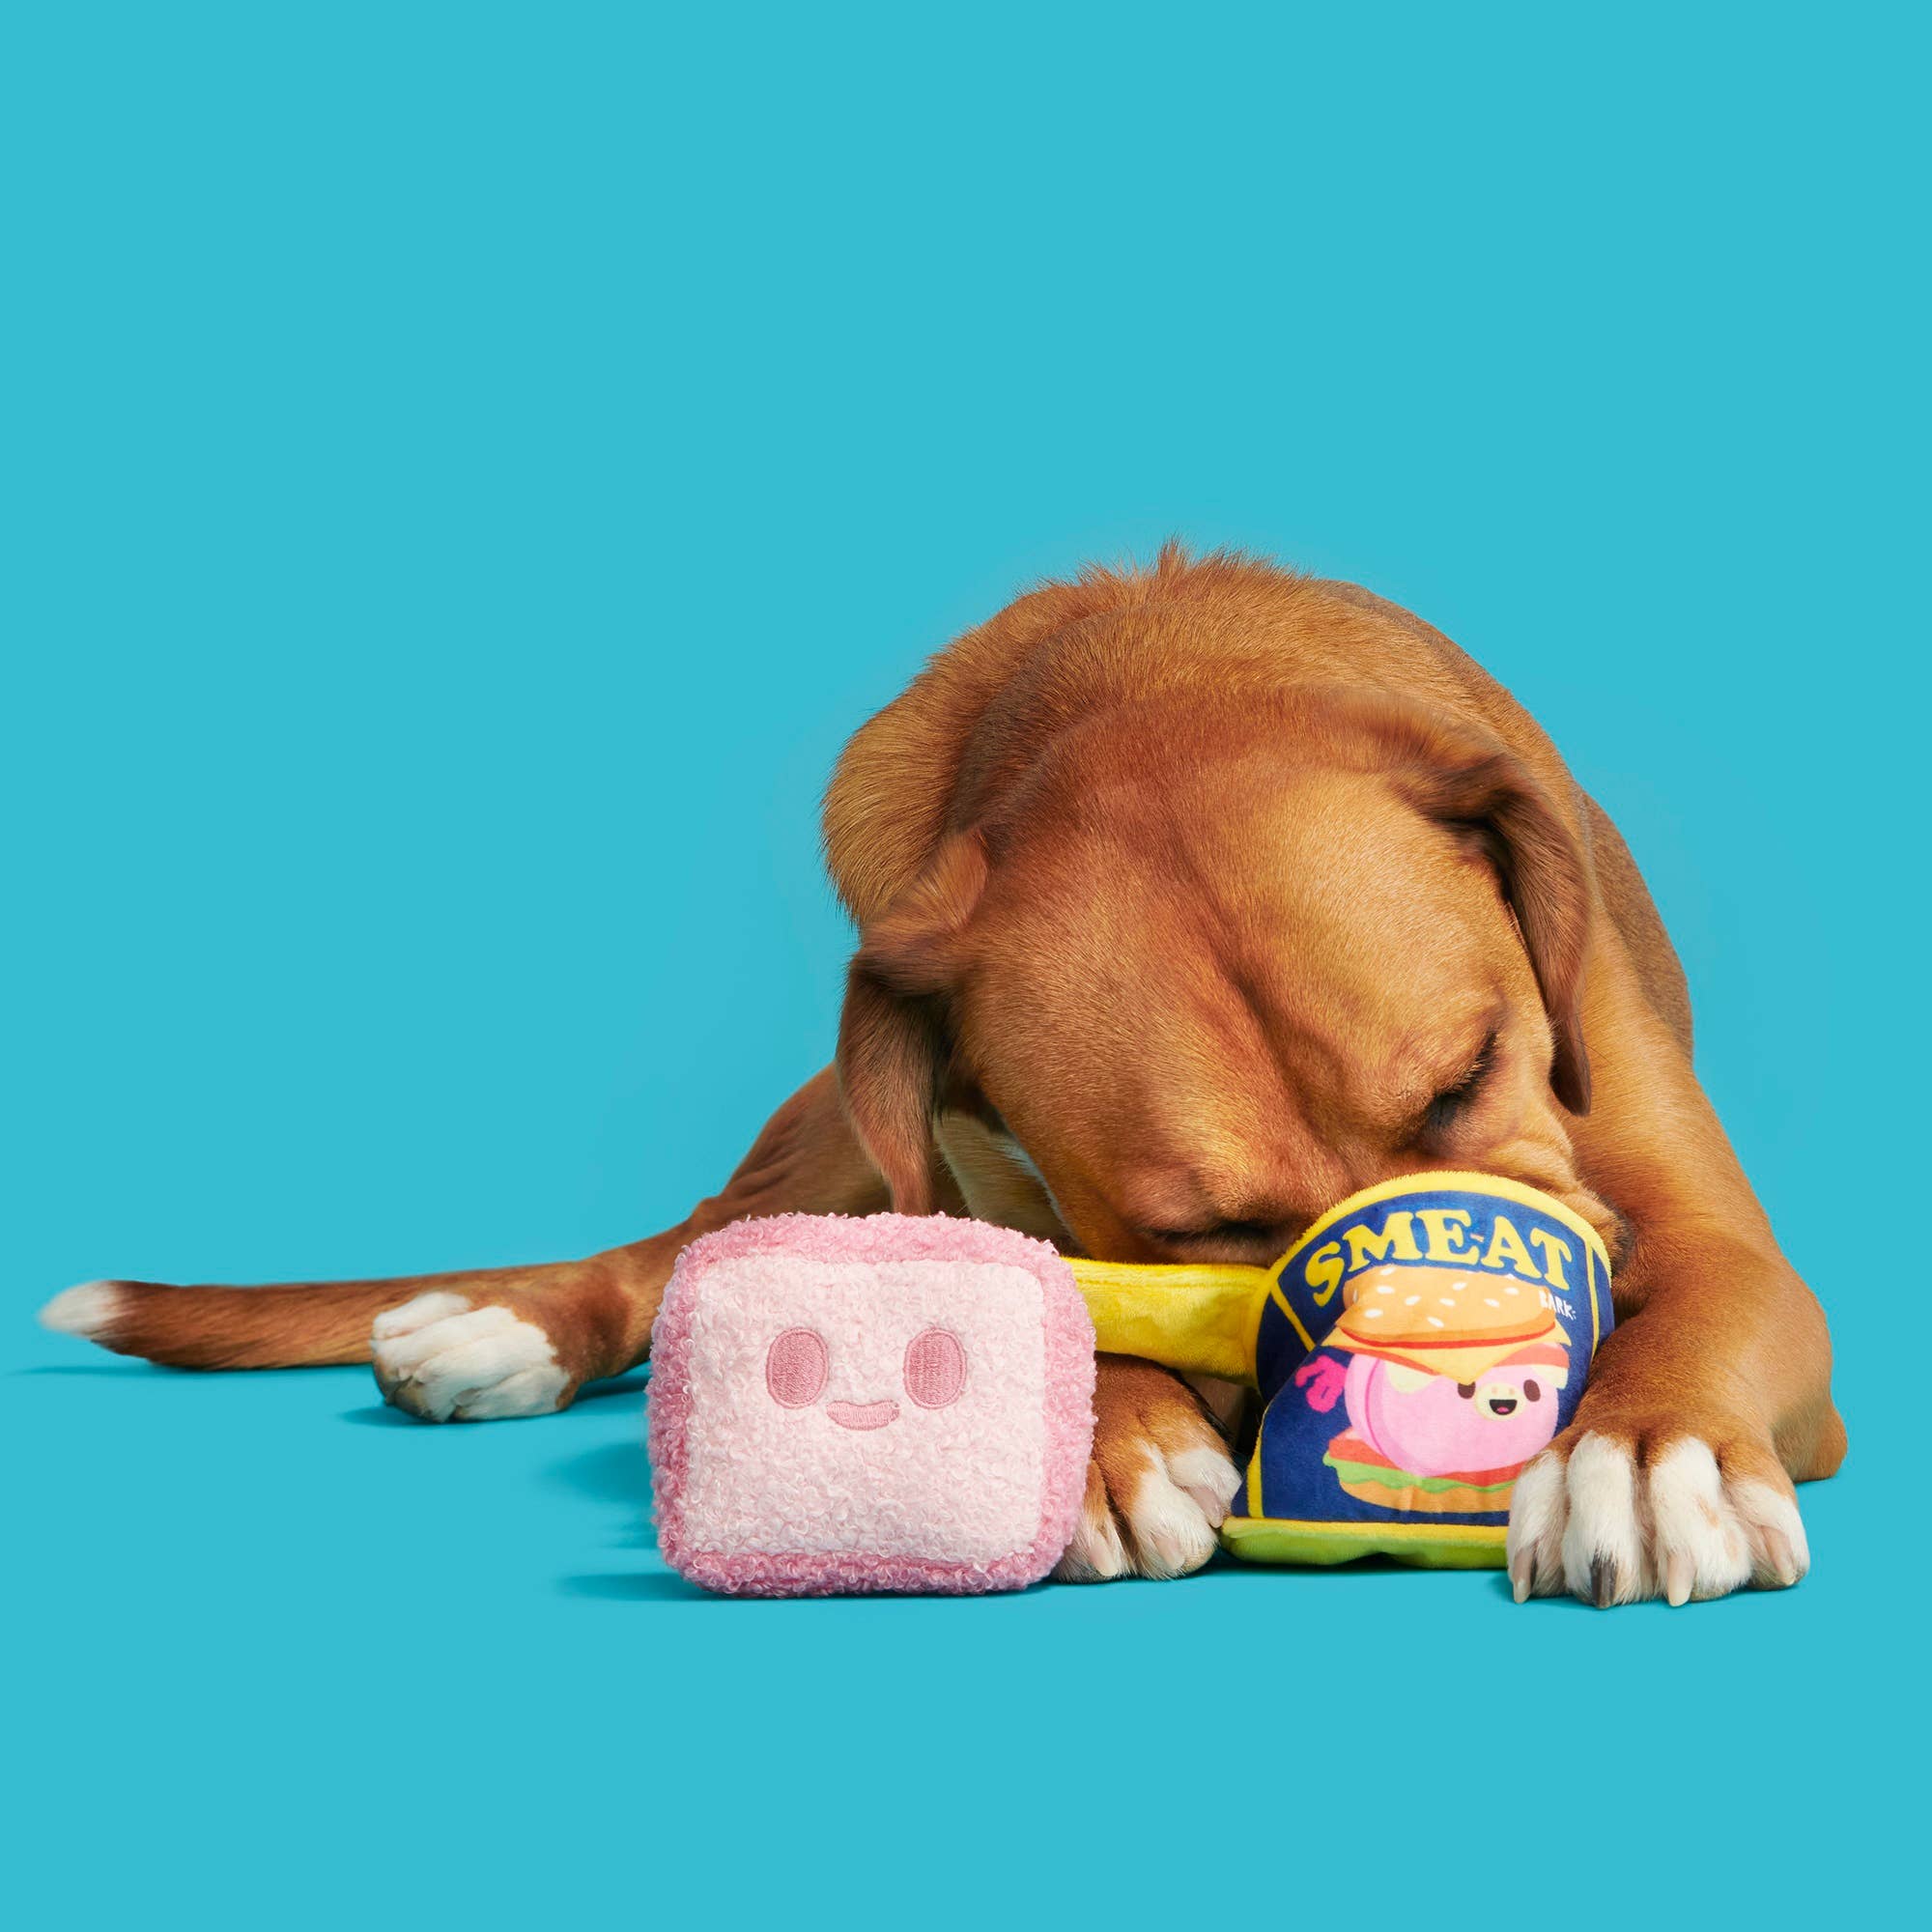 BARK Canned SMEAT Plush Dog Toy